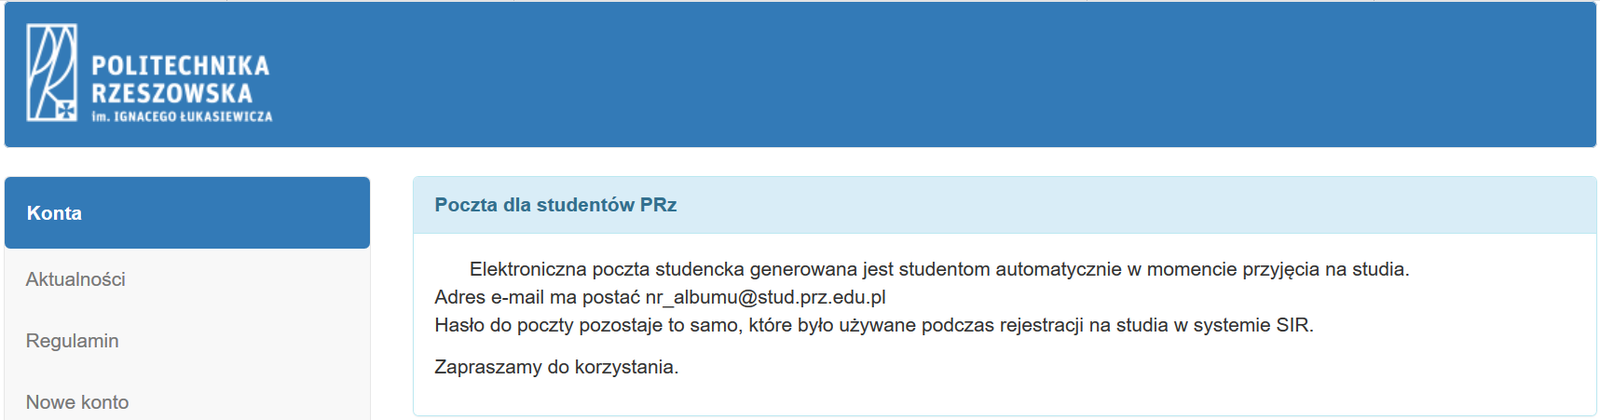 poczta_dla_studentow.png